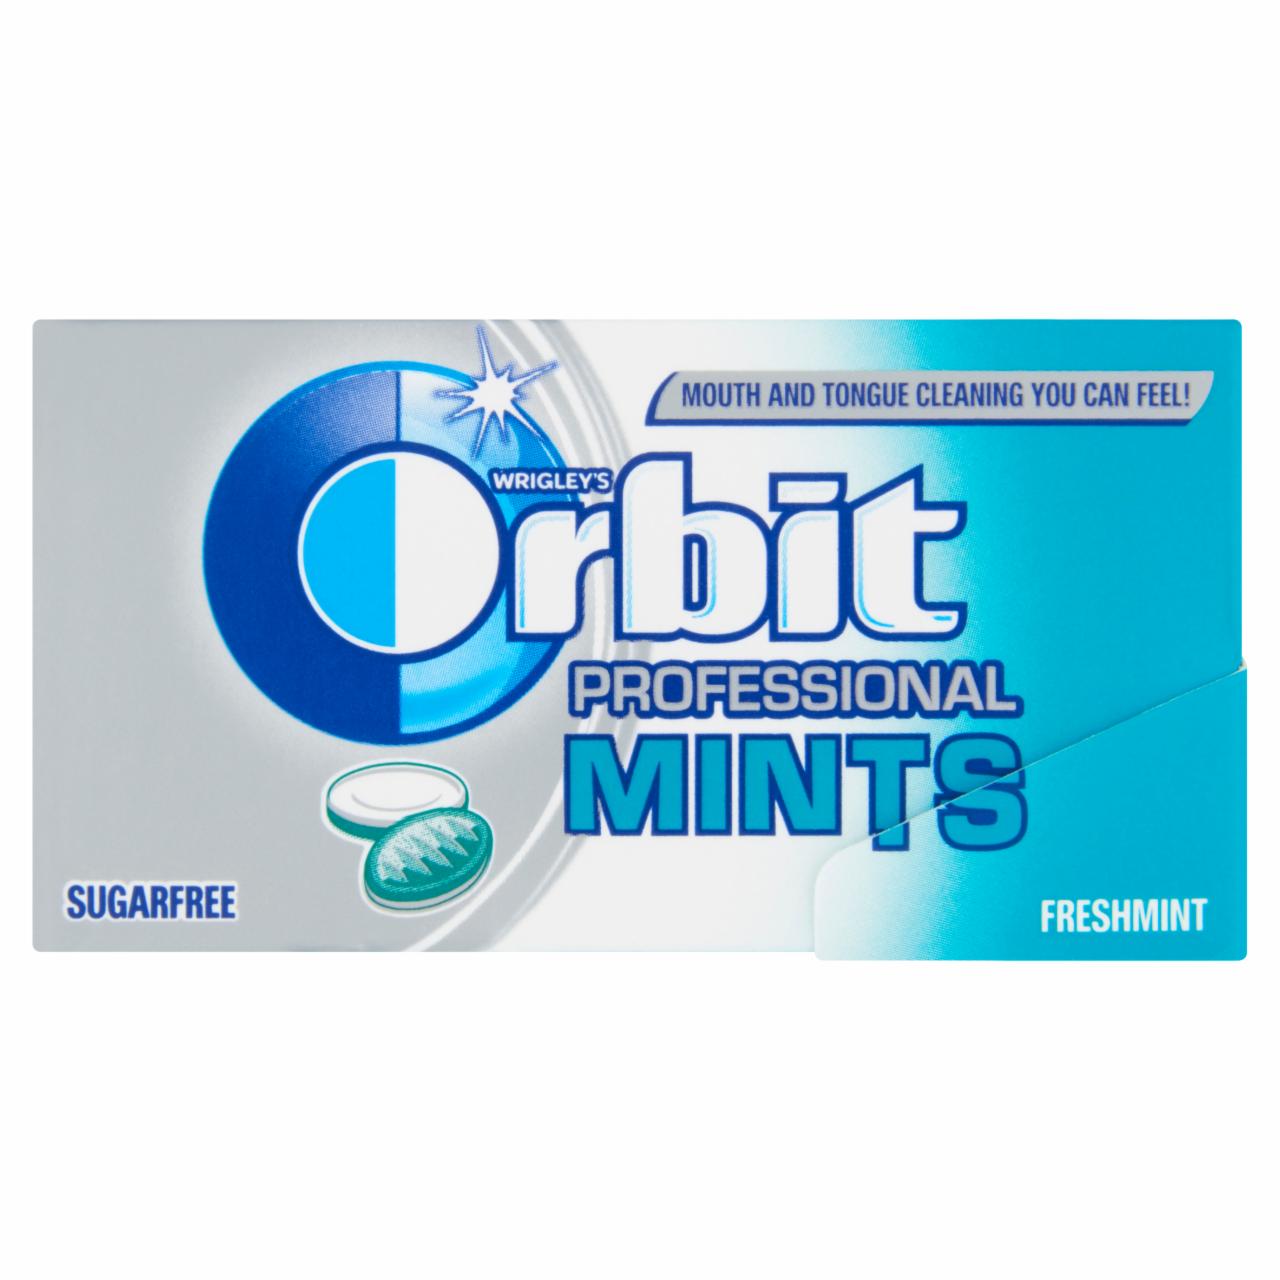 Képek - Orbit Professional Mints Freshmint mentaízű töltetlen keménycukorka 18 g